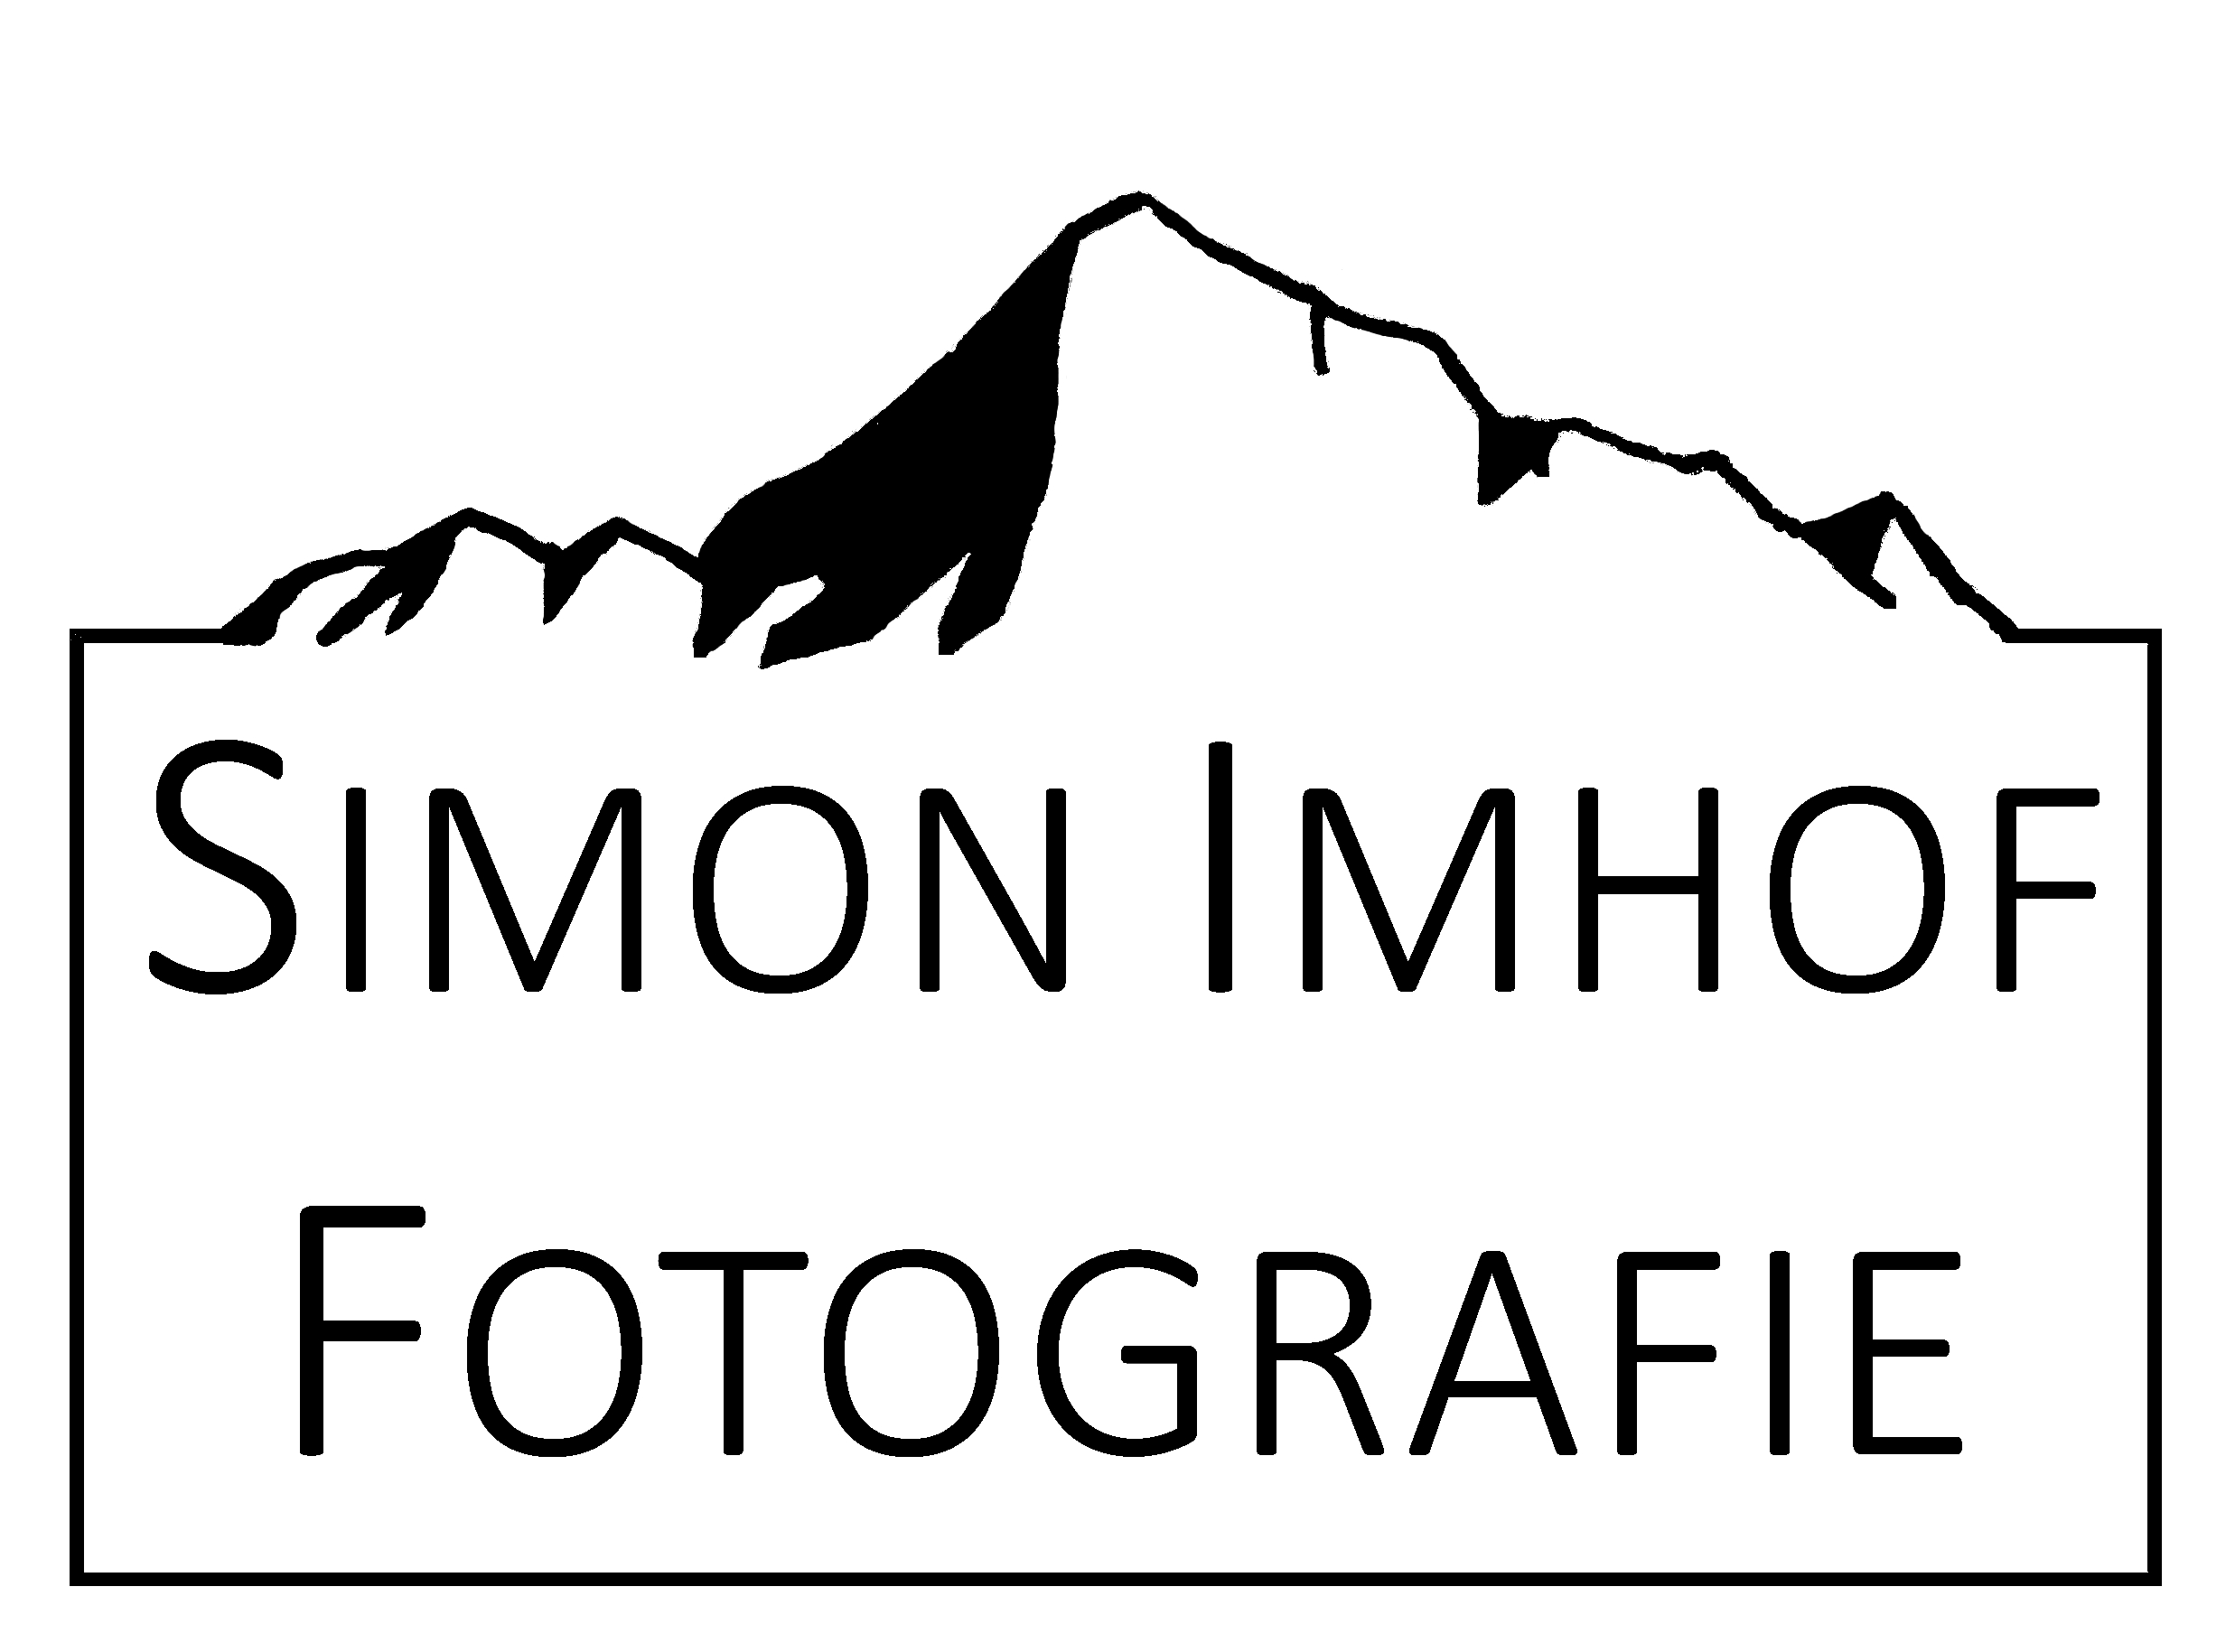 Simon Imhof Fotografie